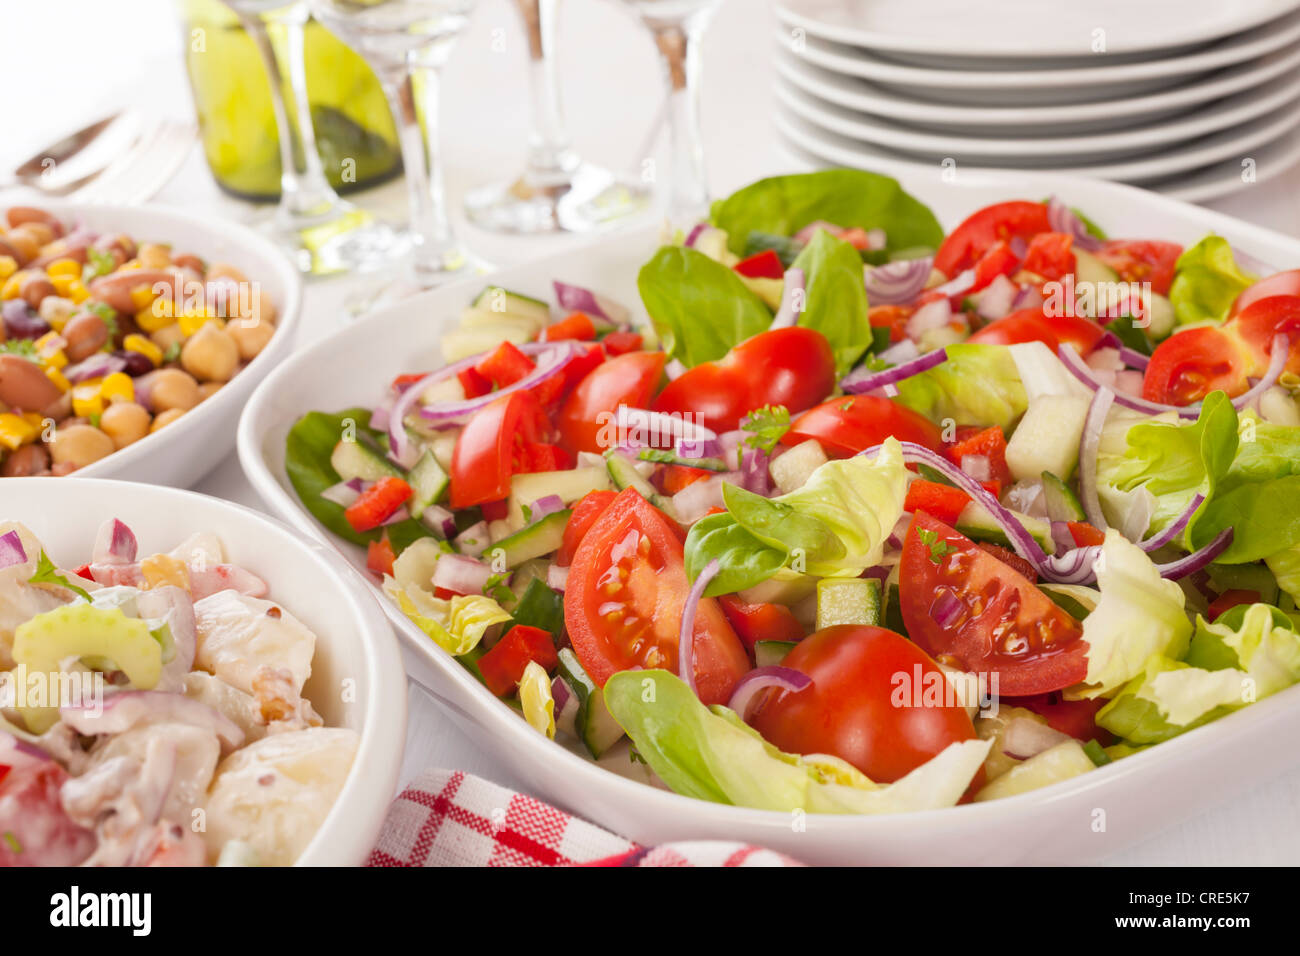 Eine Auswahl an Salaten auf einem Buffet-Tisch. Stockfoto